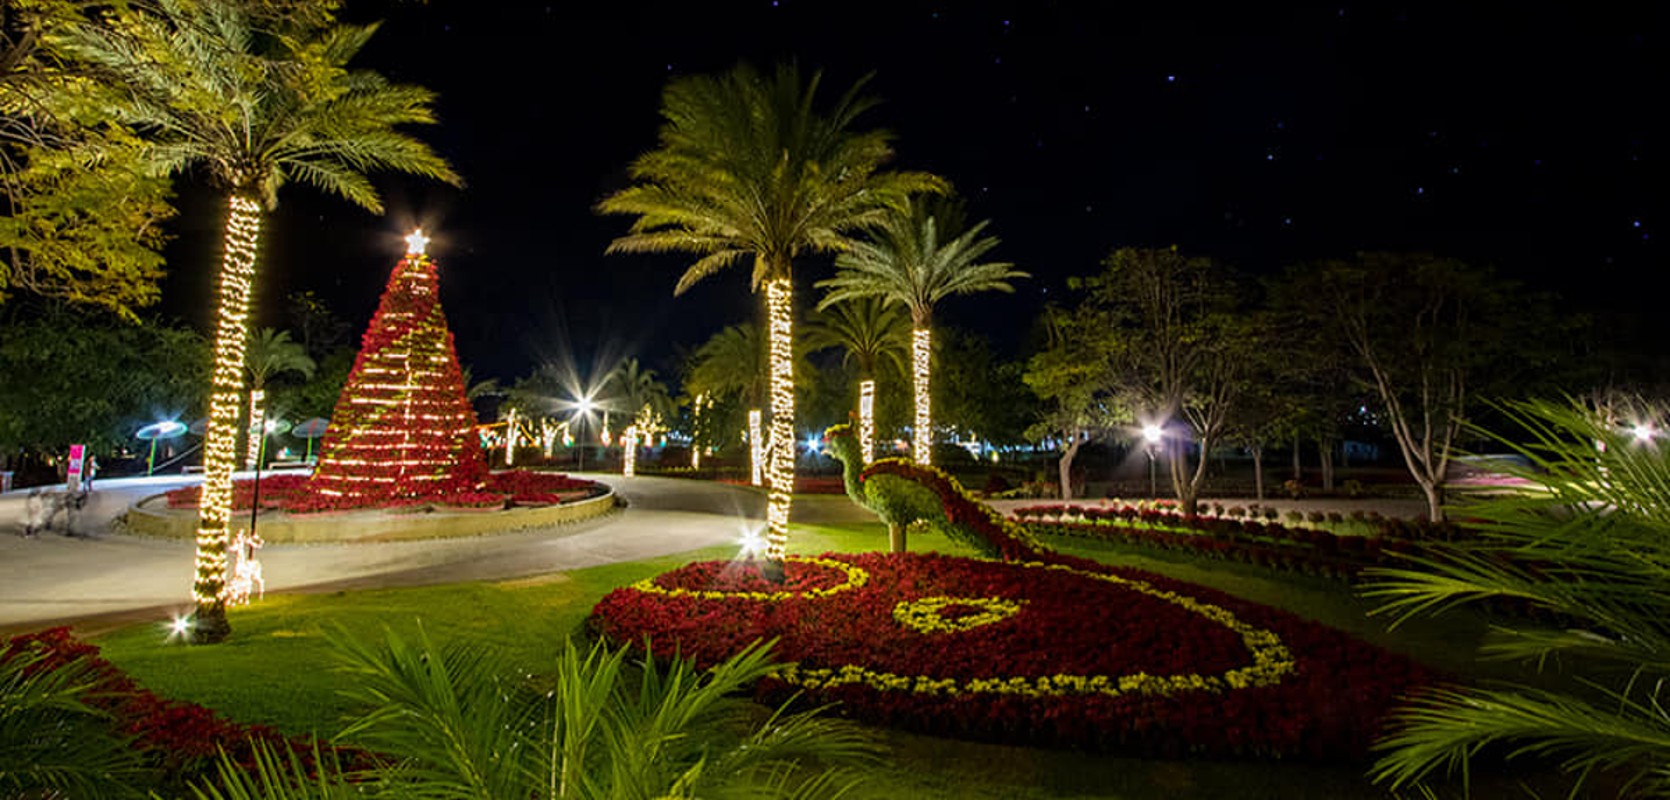 Jardines de México ofrece tours nocturnos por las fiestas decembrinas